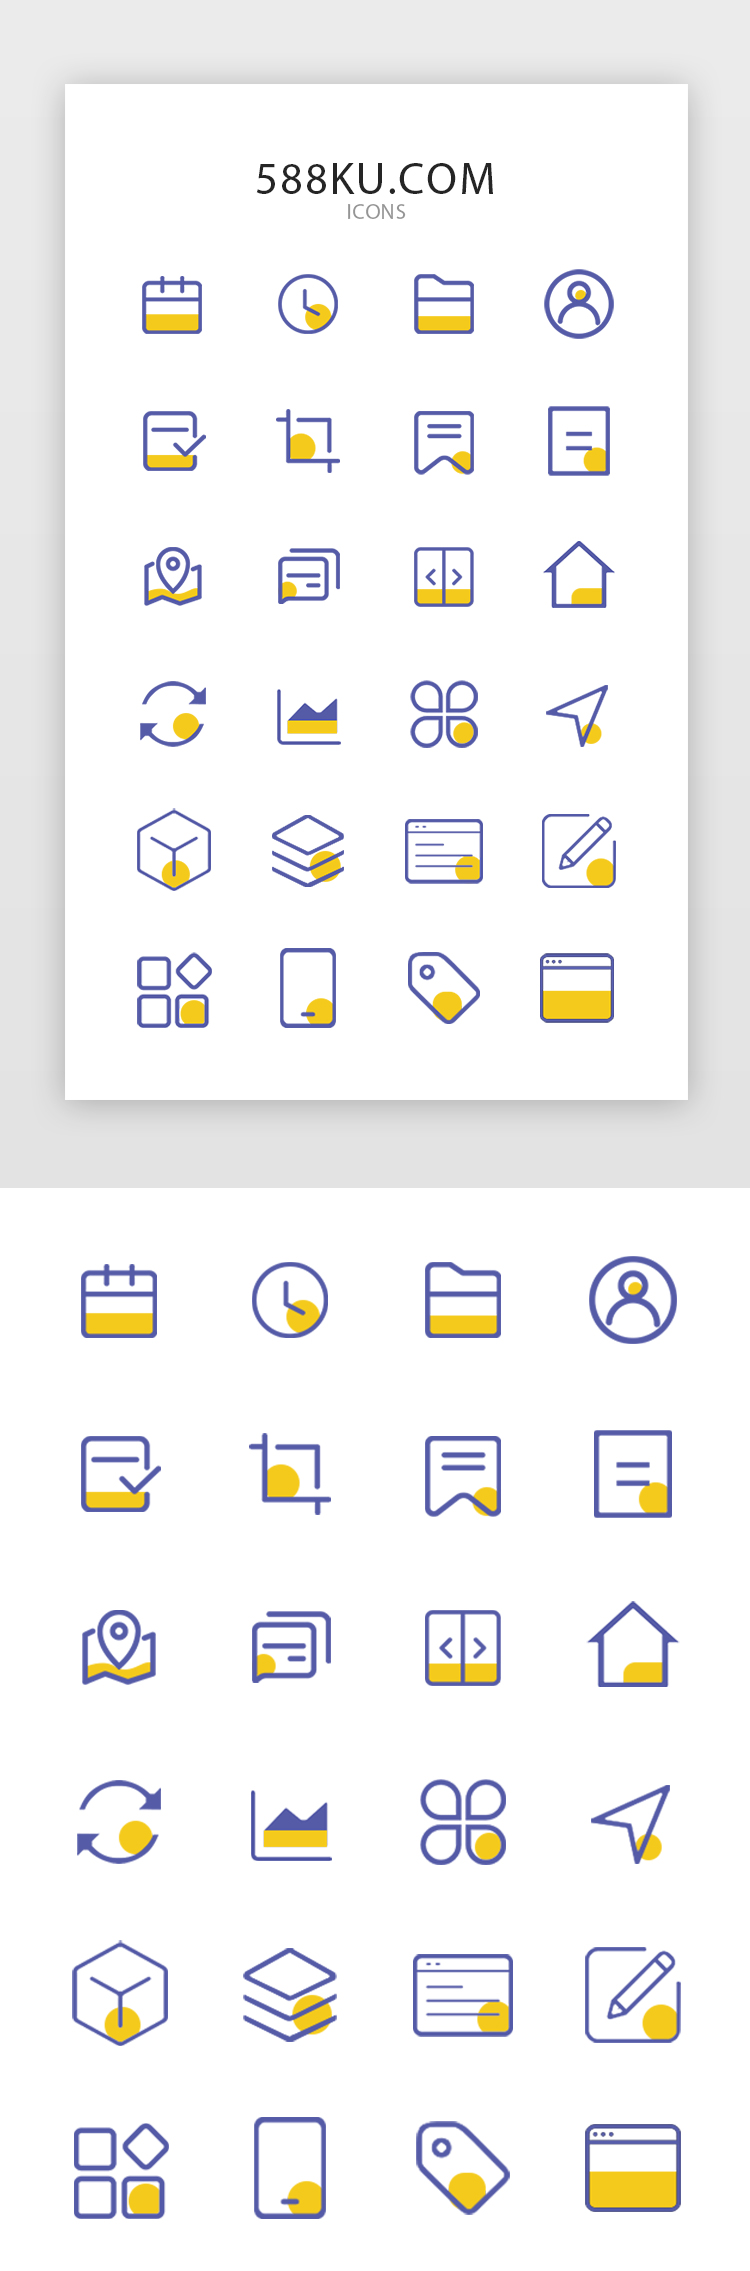 蓝色系后端平台设计常用图标icon图片